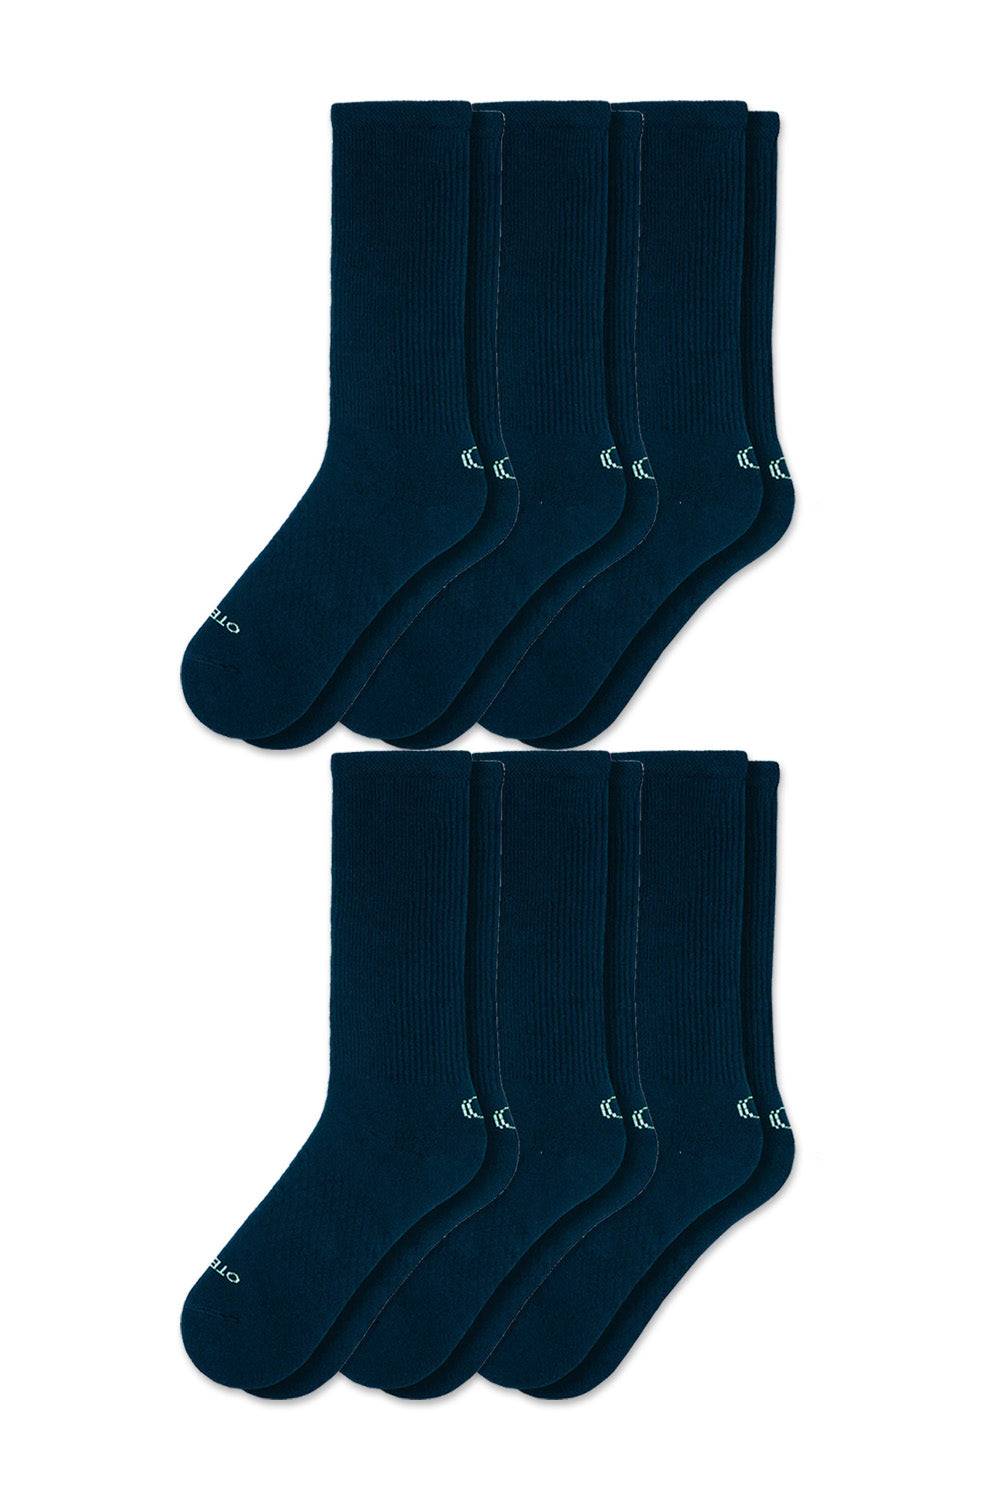 Basic crew Socks Strom Blue Pack of 6